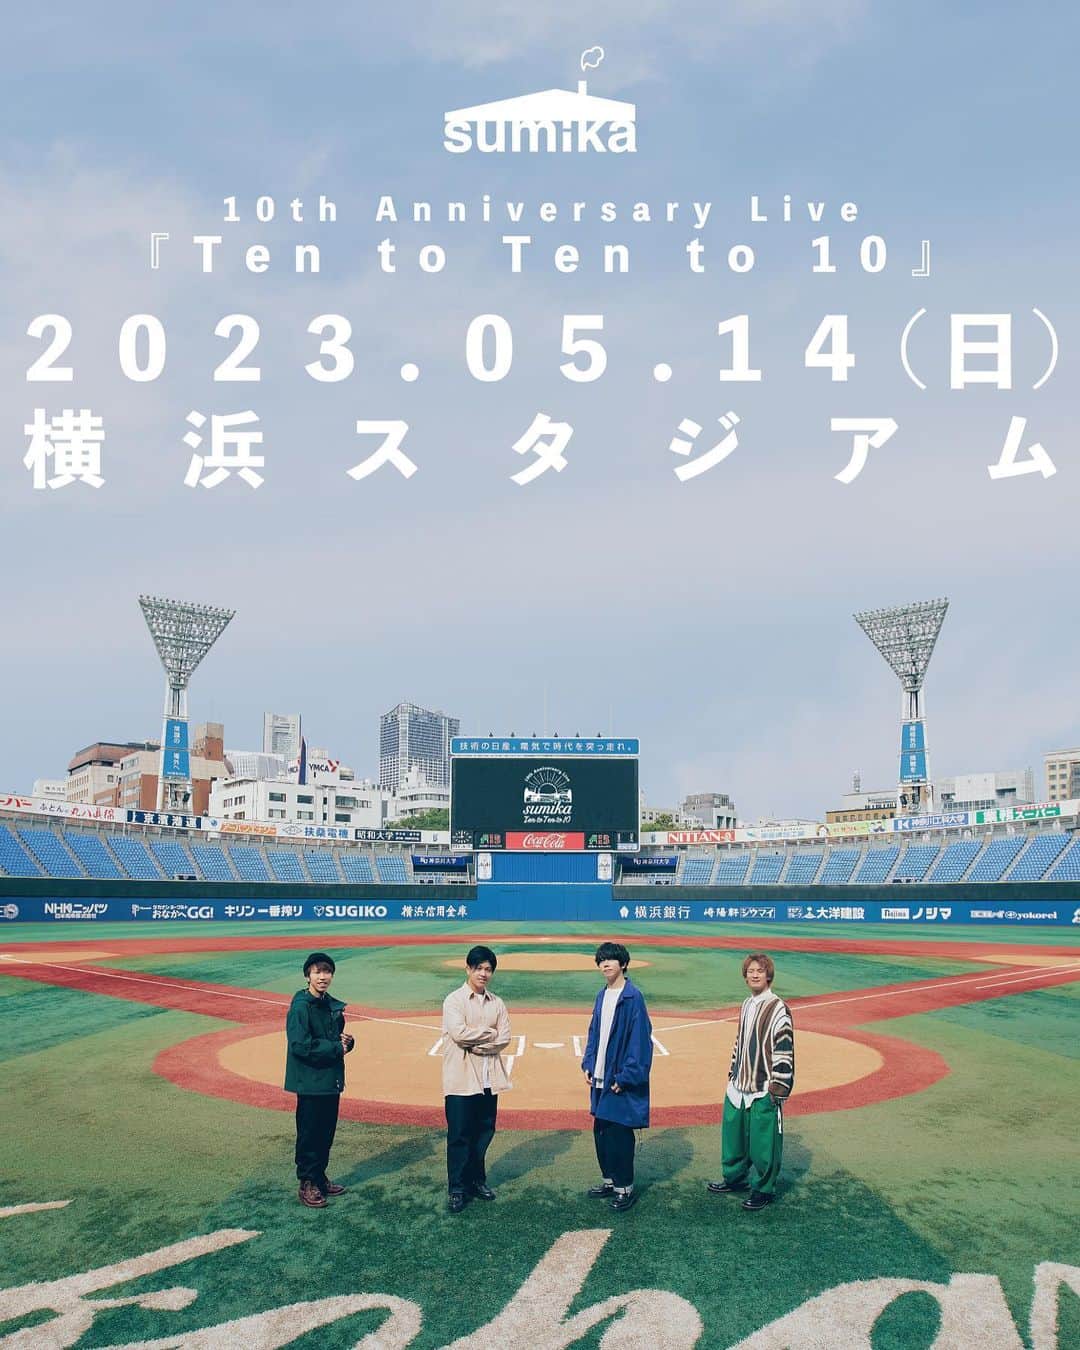 小川貴之さんのインスタグラム写真 - (小川貴之Instagram)「2023年5月14日(日) 横浜スタジアムでのワンマンライブが決定しました。  思いを少し書いていきます。  只今sumikaは10周年に向けて、今までに打ってきた点を繋ぎ合わせて一年を駆け抜けています。 打ってきた点一つ一つに、そして歩んできた一歩一歩全てに、誰かの沢山の助けや支えがありました。  メンバーだけでは1本のライブをする事すら厳しく、 レコーディングは勿論、音楽を届けるのさえ出来ません。 こうして活動できるのは全て支えてくれる人のおかげです。  そして届けた先で聴いてくれる人がいて、その人の生活がある。 誰かの生活の中で我々の音楽が生きているのが、本当に幸せです。  10年の中で、積み重ねてきた全てとイコールに 支えてくれた人への感謝があります。 10周年イヤーで、全ての点を思い返して繋ぎ合わせる中で、改めてその感謝で胸がいっぱいになっています。  10周年の節目となる2023年5月 そしてsumikaが生まれた神奈川で  全ての点を繋げて、sumikaの集大成を 横浜スタジアムでお見せできたらと思います。 この胸いっぱいになっている、今までの感謝を全て伝え切って 10年のゴールテープを切り 全員で足並み揃えてこの先10年20年と続くsumikaに向けてスタートを切りたいです！  セットリストや演出もこの日の為に全てを新しく構築していきます！会場選びも、出来るだけ多くの人に伝えられるようにと時間をかけてチームで決めていきました。  色々言いすぎて重たくなっちゃったけど笑 来た人に心の底から楽しんで貰えるようにチームで万全の体制でライブを作ります！！！！  改めてライブの情報です！  sumika 10th Anniversary Live 『Ten to Ten to 10』 2023年5月14日(日) 横浜スタジアム  チケットの最速先行もスタートしております！  詳しい情報はsumikaのweb siteやSNSなら間違いないです(超信頼)！  ここからは個人的な話 (過去の話もあるので読みたくないなーの方は無理せずでお願いします)  私は横浜生まれ横浜育ちで 小さい時からこの横浜スタジアムは勿論 横浜スタジアムがある関内の地域で遊んでいました。  中学生の時は関内伊勢佐木町の50円で遊べるゲームセンターで友達と遊び(ペロペロって名前w)(ピロピロだったw) 思い出が沢山あります。  音楽活動をスタートしたのも関内です。 まずは伊勢佐木町で路上弾き語りを始めました。  ライブハウスデビューは同じく関内 場所は24westという今はもう無い箱で初めてのステージを体験しました。  そこからfrom a novelというバンドを組み 主に横浜、中でも関内で活動していました。  根拠のない自信を機動力に変え、ライバル達とひたすらライブを重ねて、沢山の悔し涙を横浜で流してきました。 今でも胸に刺さった言葉は刺さったまま 何かが変わるかもしれないと思ったライブの瞬間は鮮明に覚えています。  夢半ばで解散してしまいましたが 信念は変わらずそのまま 今でも心で燃えている物が常にあります。  全てが原動力となり、血となり肉となり 今も一生懸命日々音楽と共に生きています。  語り尽くせないほどストーリーがあるここ横浜で そしてその横浜のシンボルとなる横浜スタジアムで 節目となるこのタイミングでのワンマンライブ  あまりにも感動的過ぎるんです。  sumikaらしく 自分らしく 今まで出会ってくれた人全てに向けて 全てを伝え切りたいと思います！  まずは健康第一に！元気に過ごしていきましょ！」11月2日 14時11分 - takayuki_ogawa_sumika